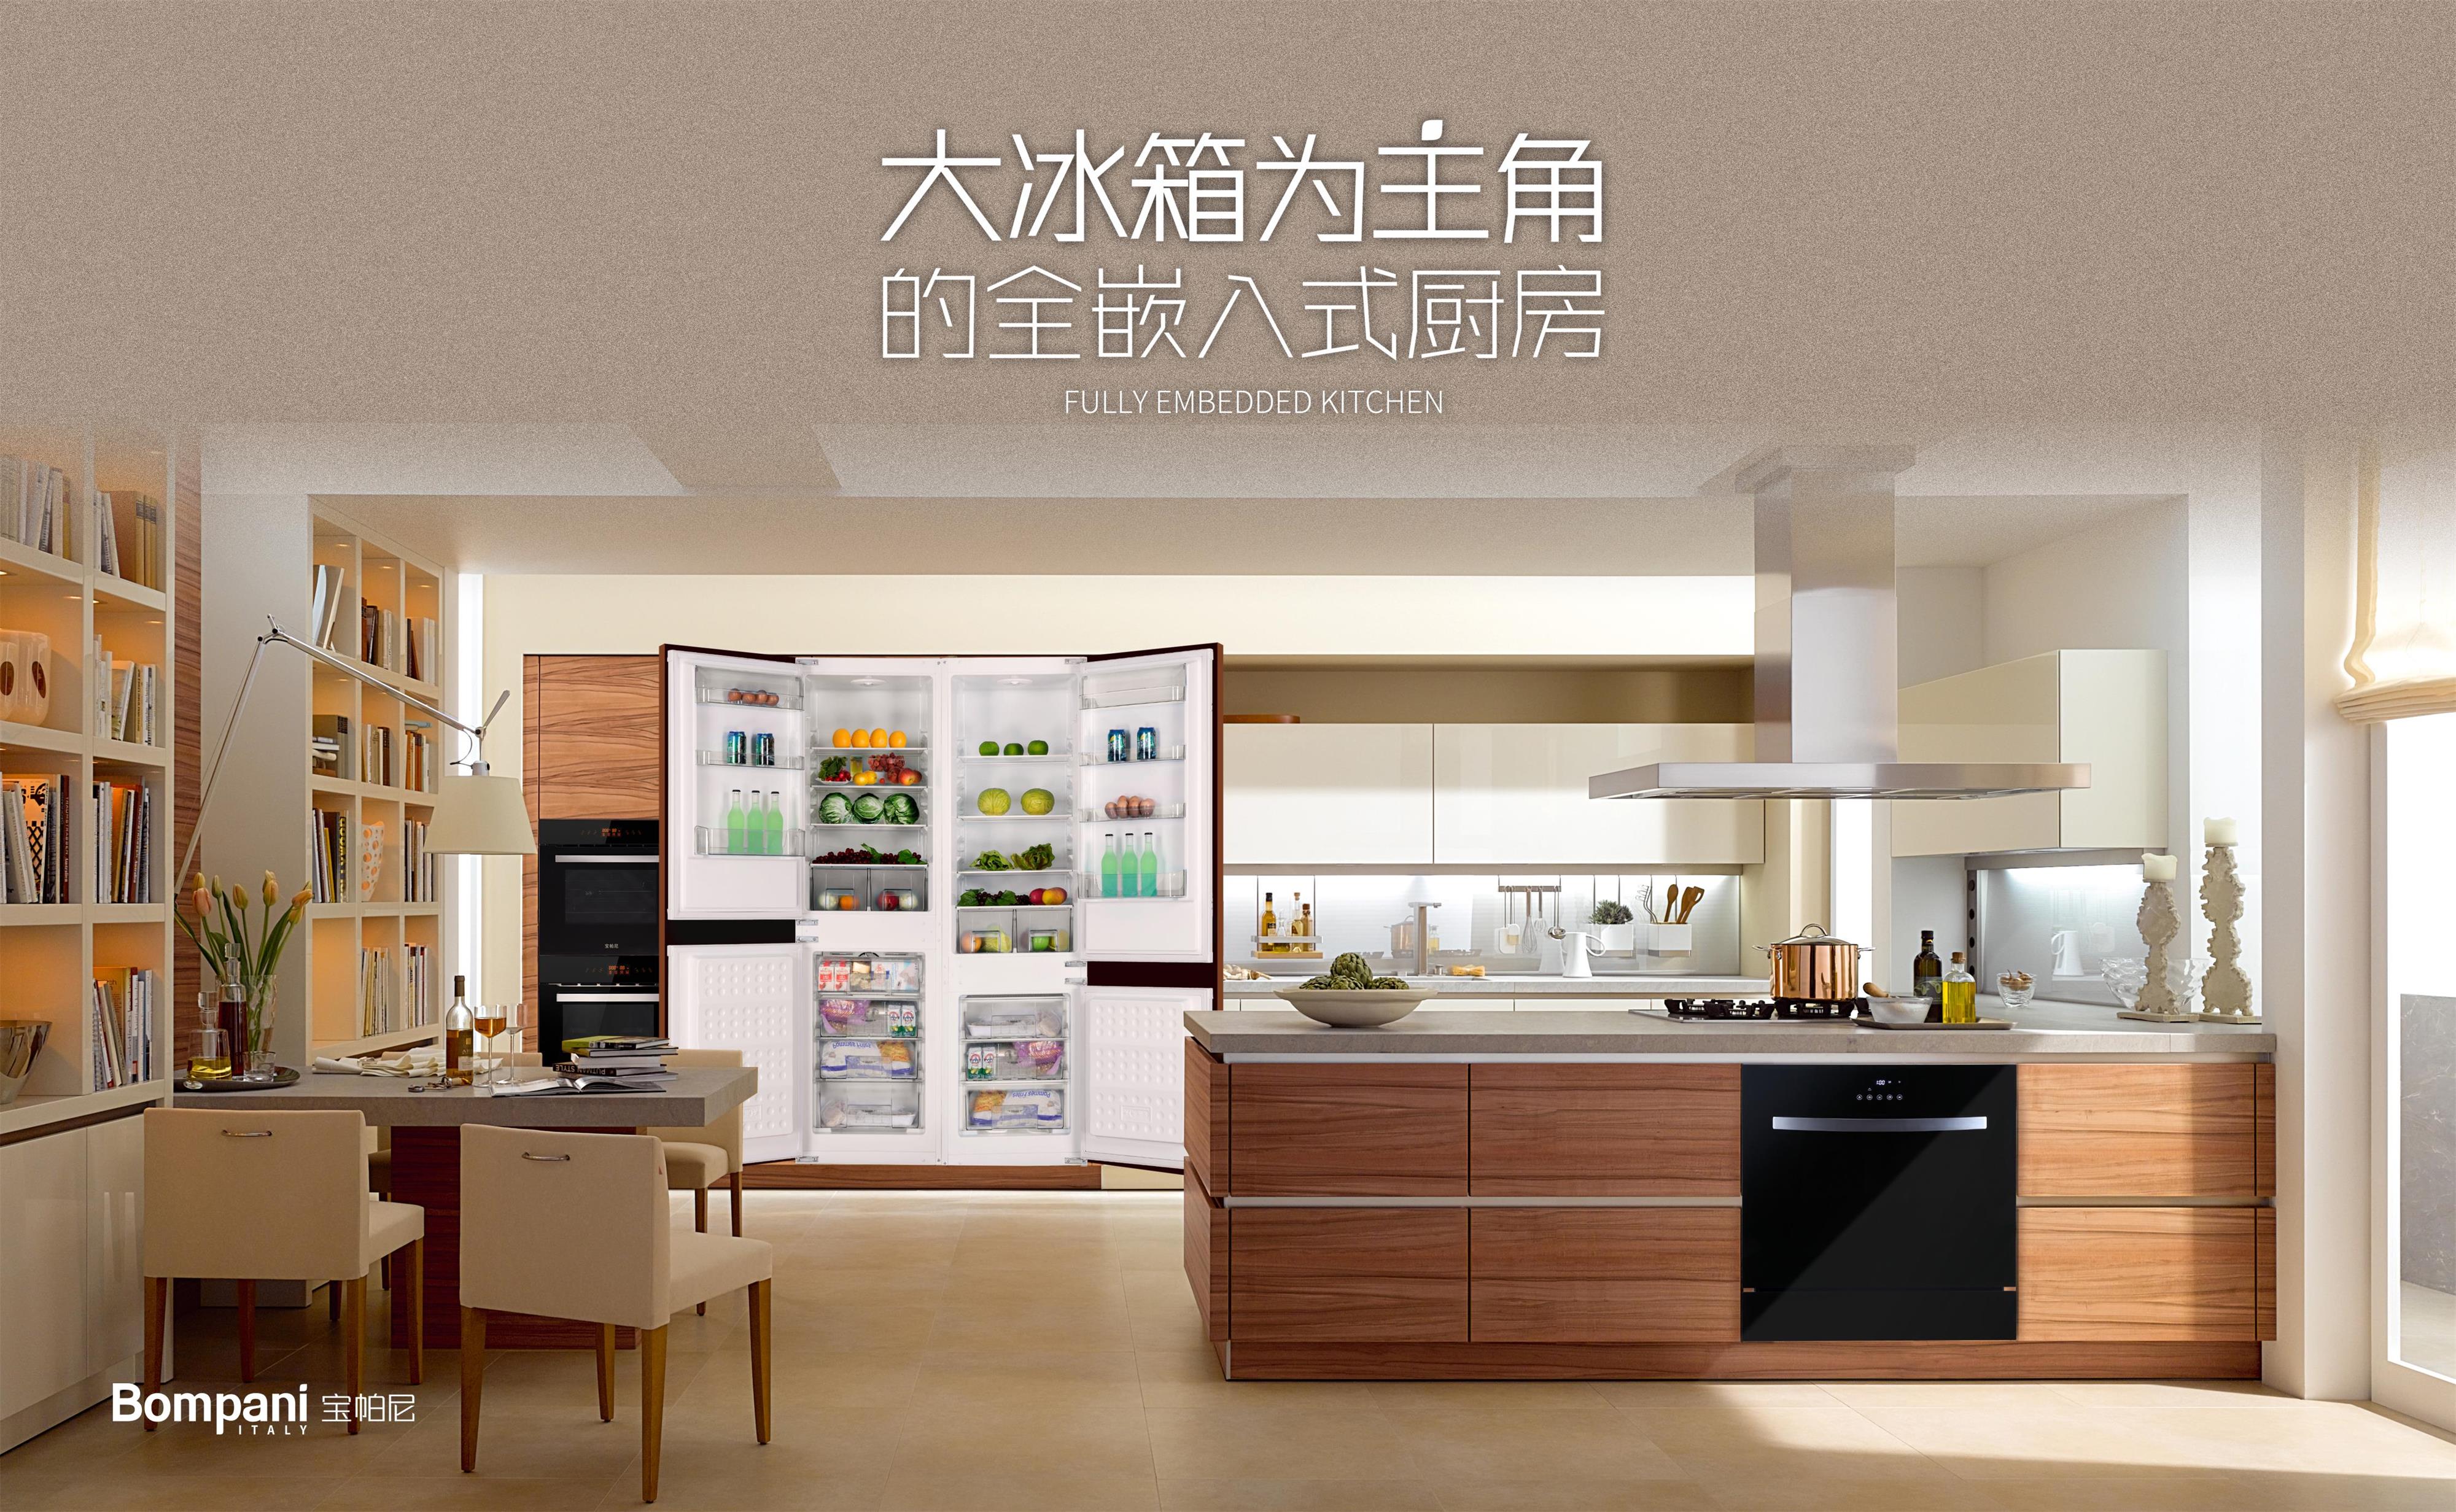 以“大冰箱为主角”的BOMPANI全嵌入式新中产厨房正式在国内面向定制家具行业招商